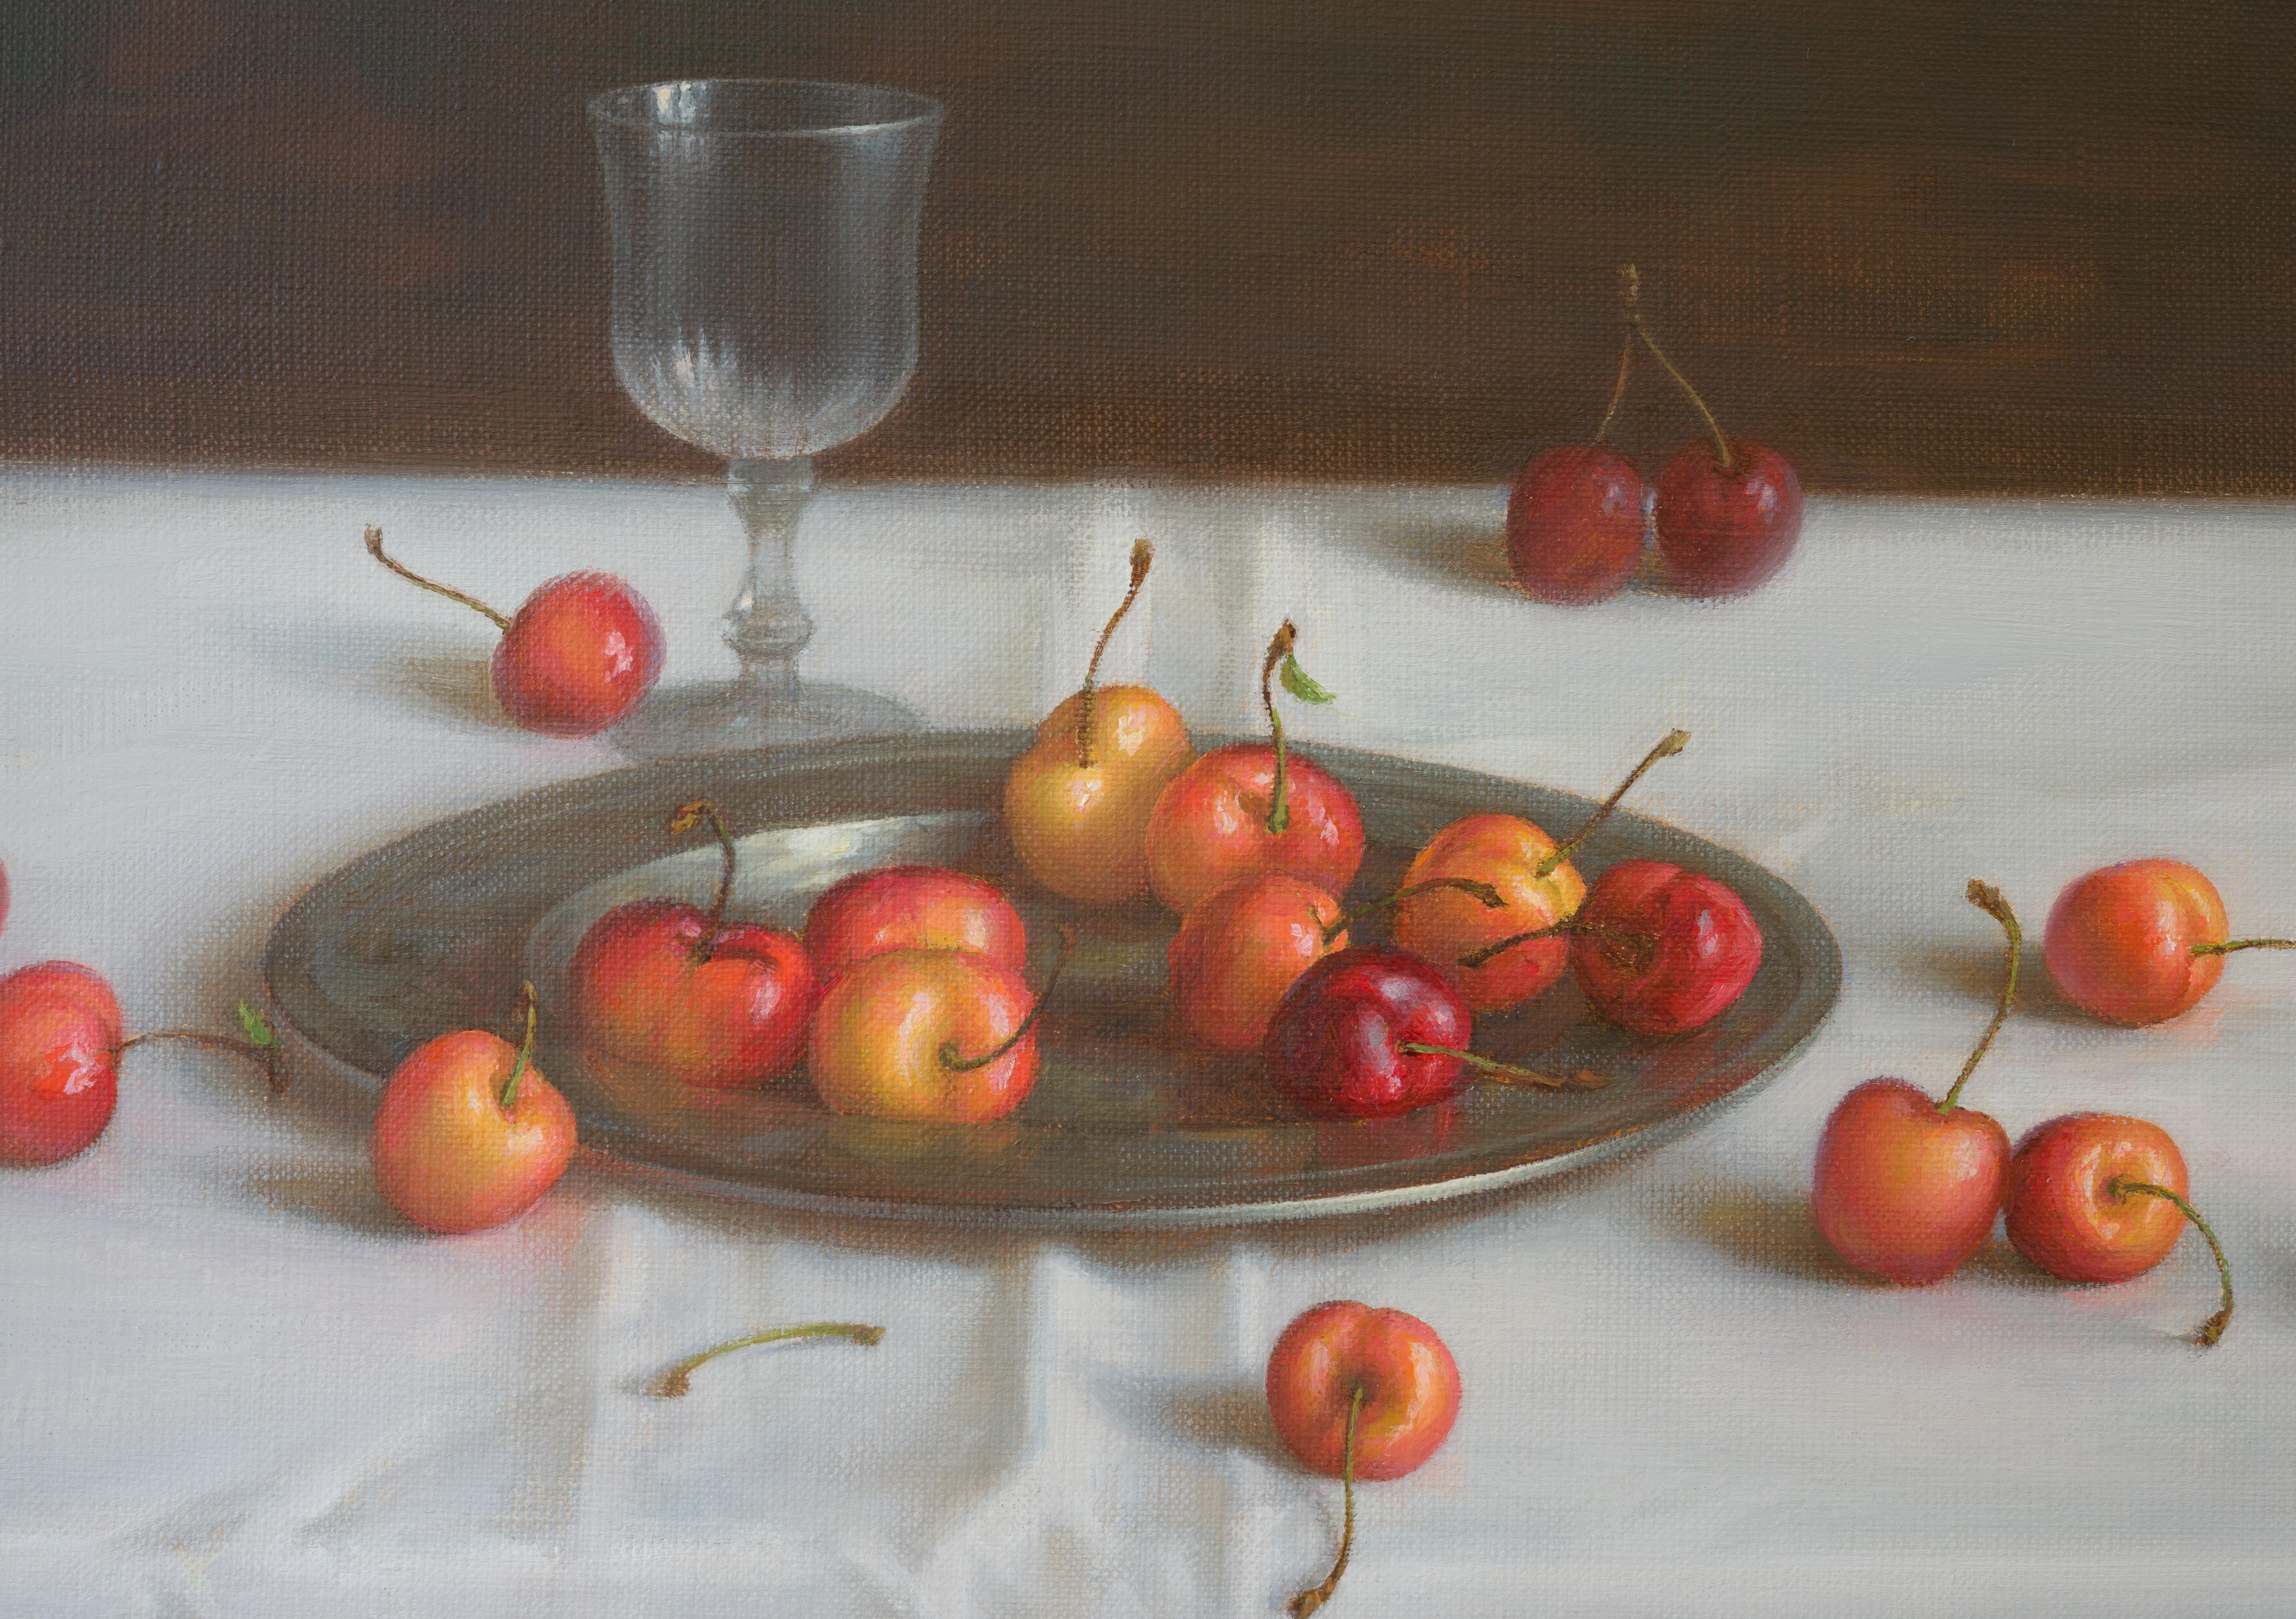 Cherry summer - Painting by Irina Trushkova